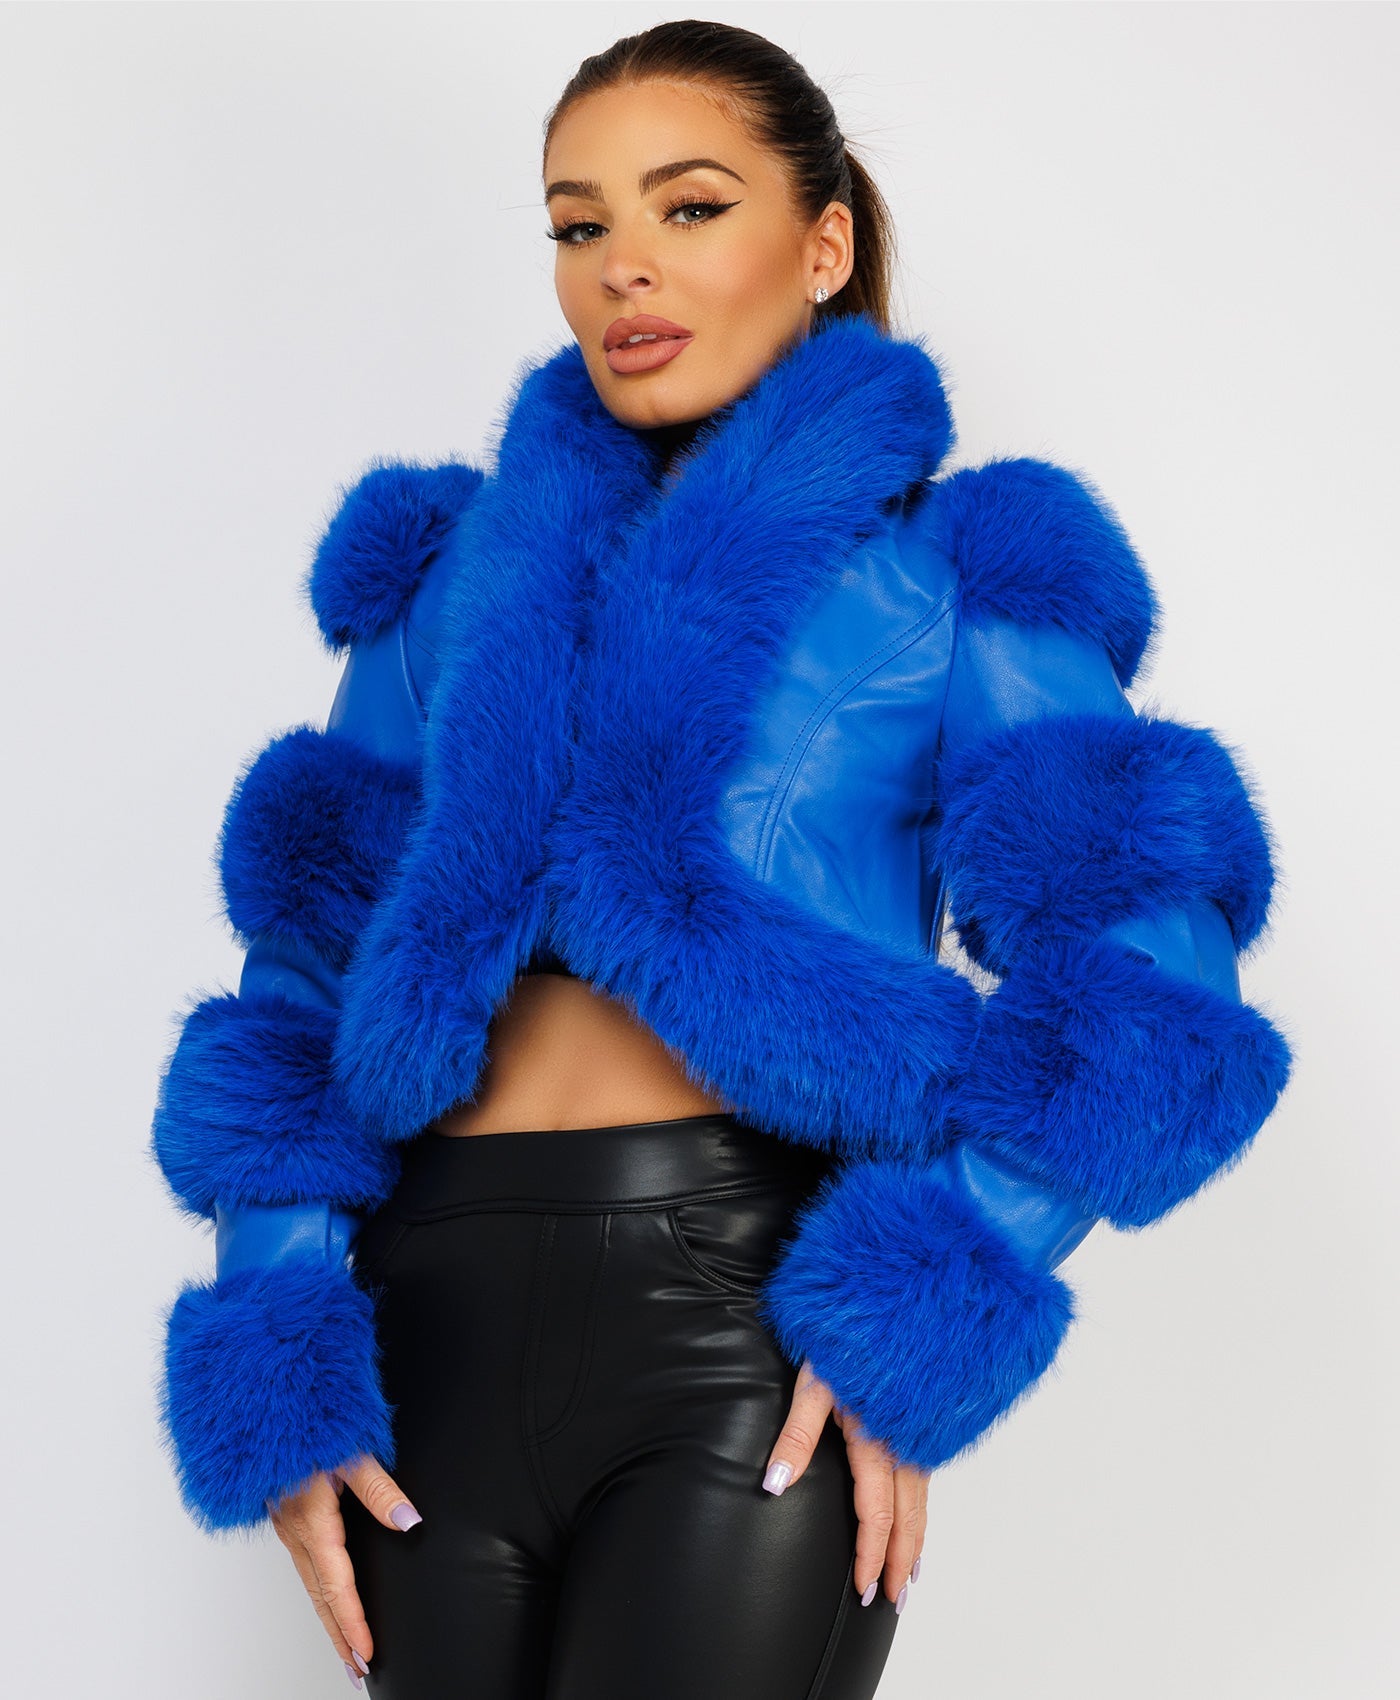 Faux-Fur-Leather-Jacket-Royal-Blue-1